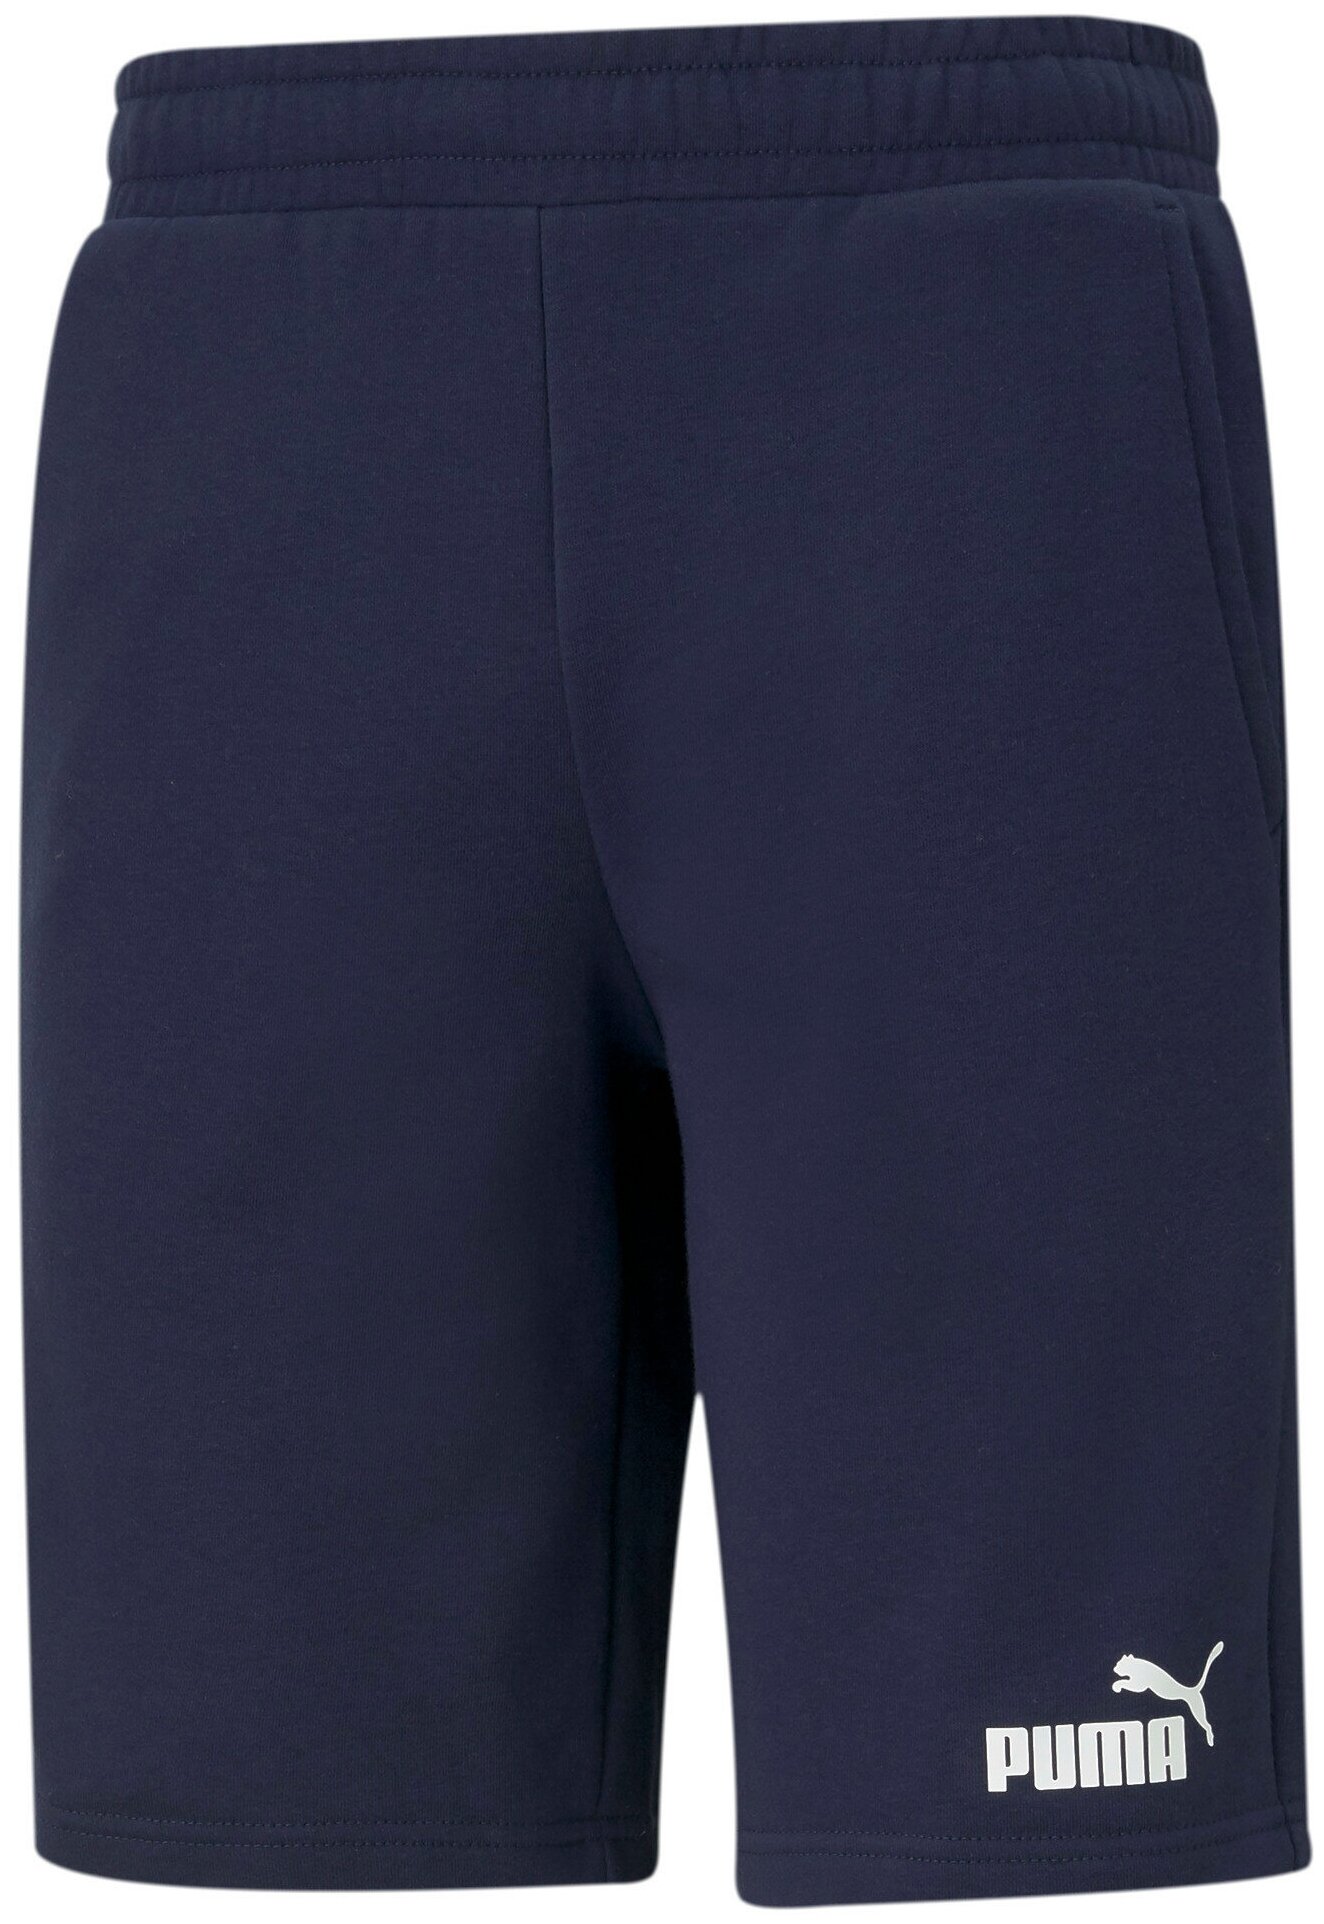 Шорты спортивные PUMA Ess Shorts, размер L, синий